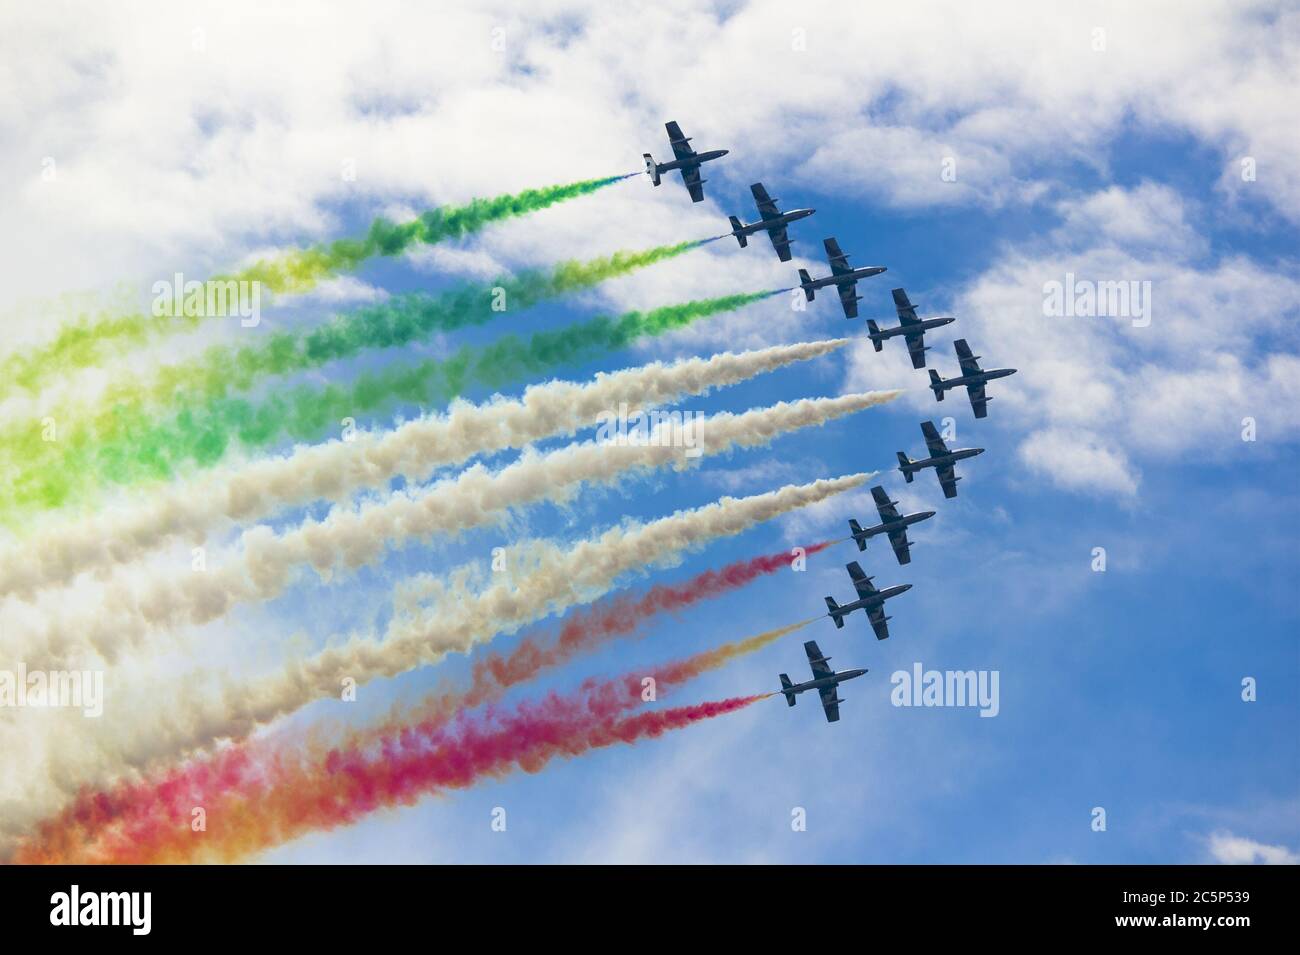 Bildung von neun Kunstflugzeugen während der Flugshow des Kunstfluges. Farbiger Rauch hinter Flugzeugen. Ausstellung von Lotsendienst und Manövrierfähigkeit Stockfoto